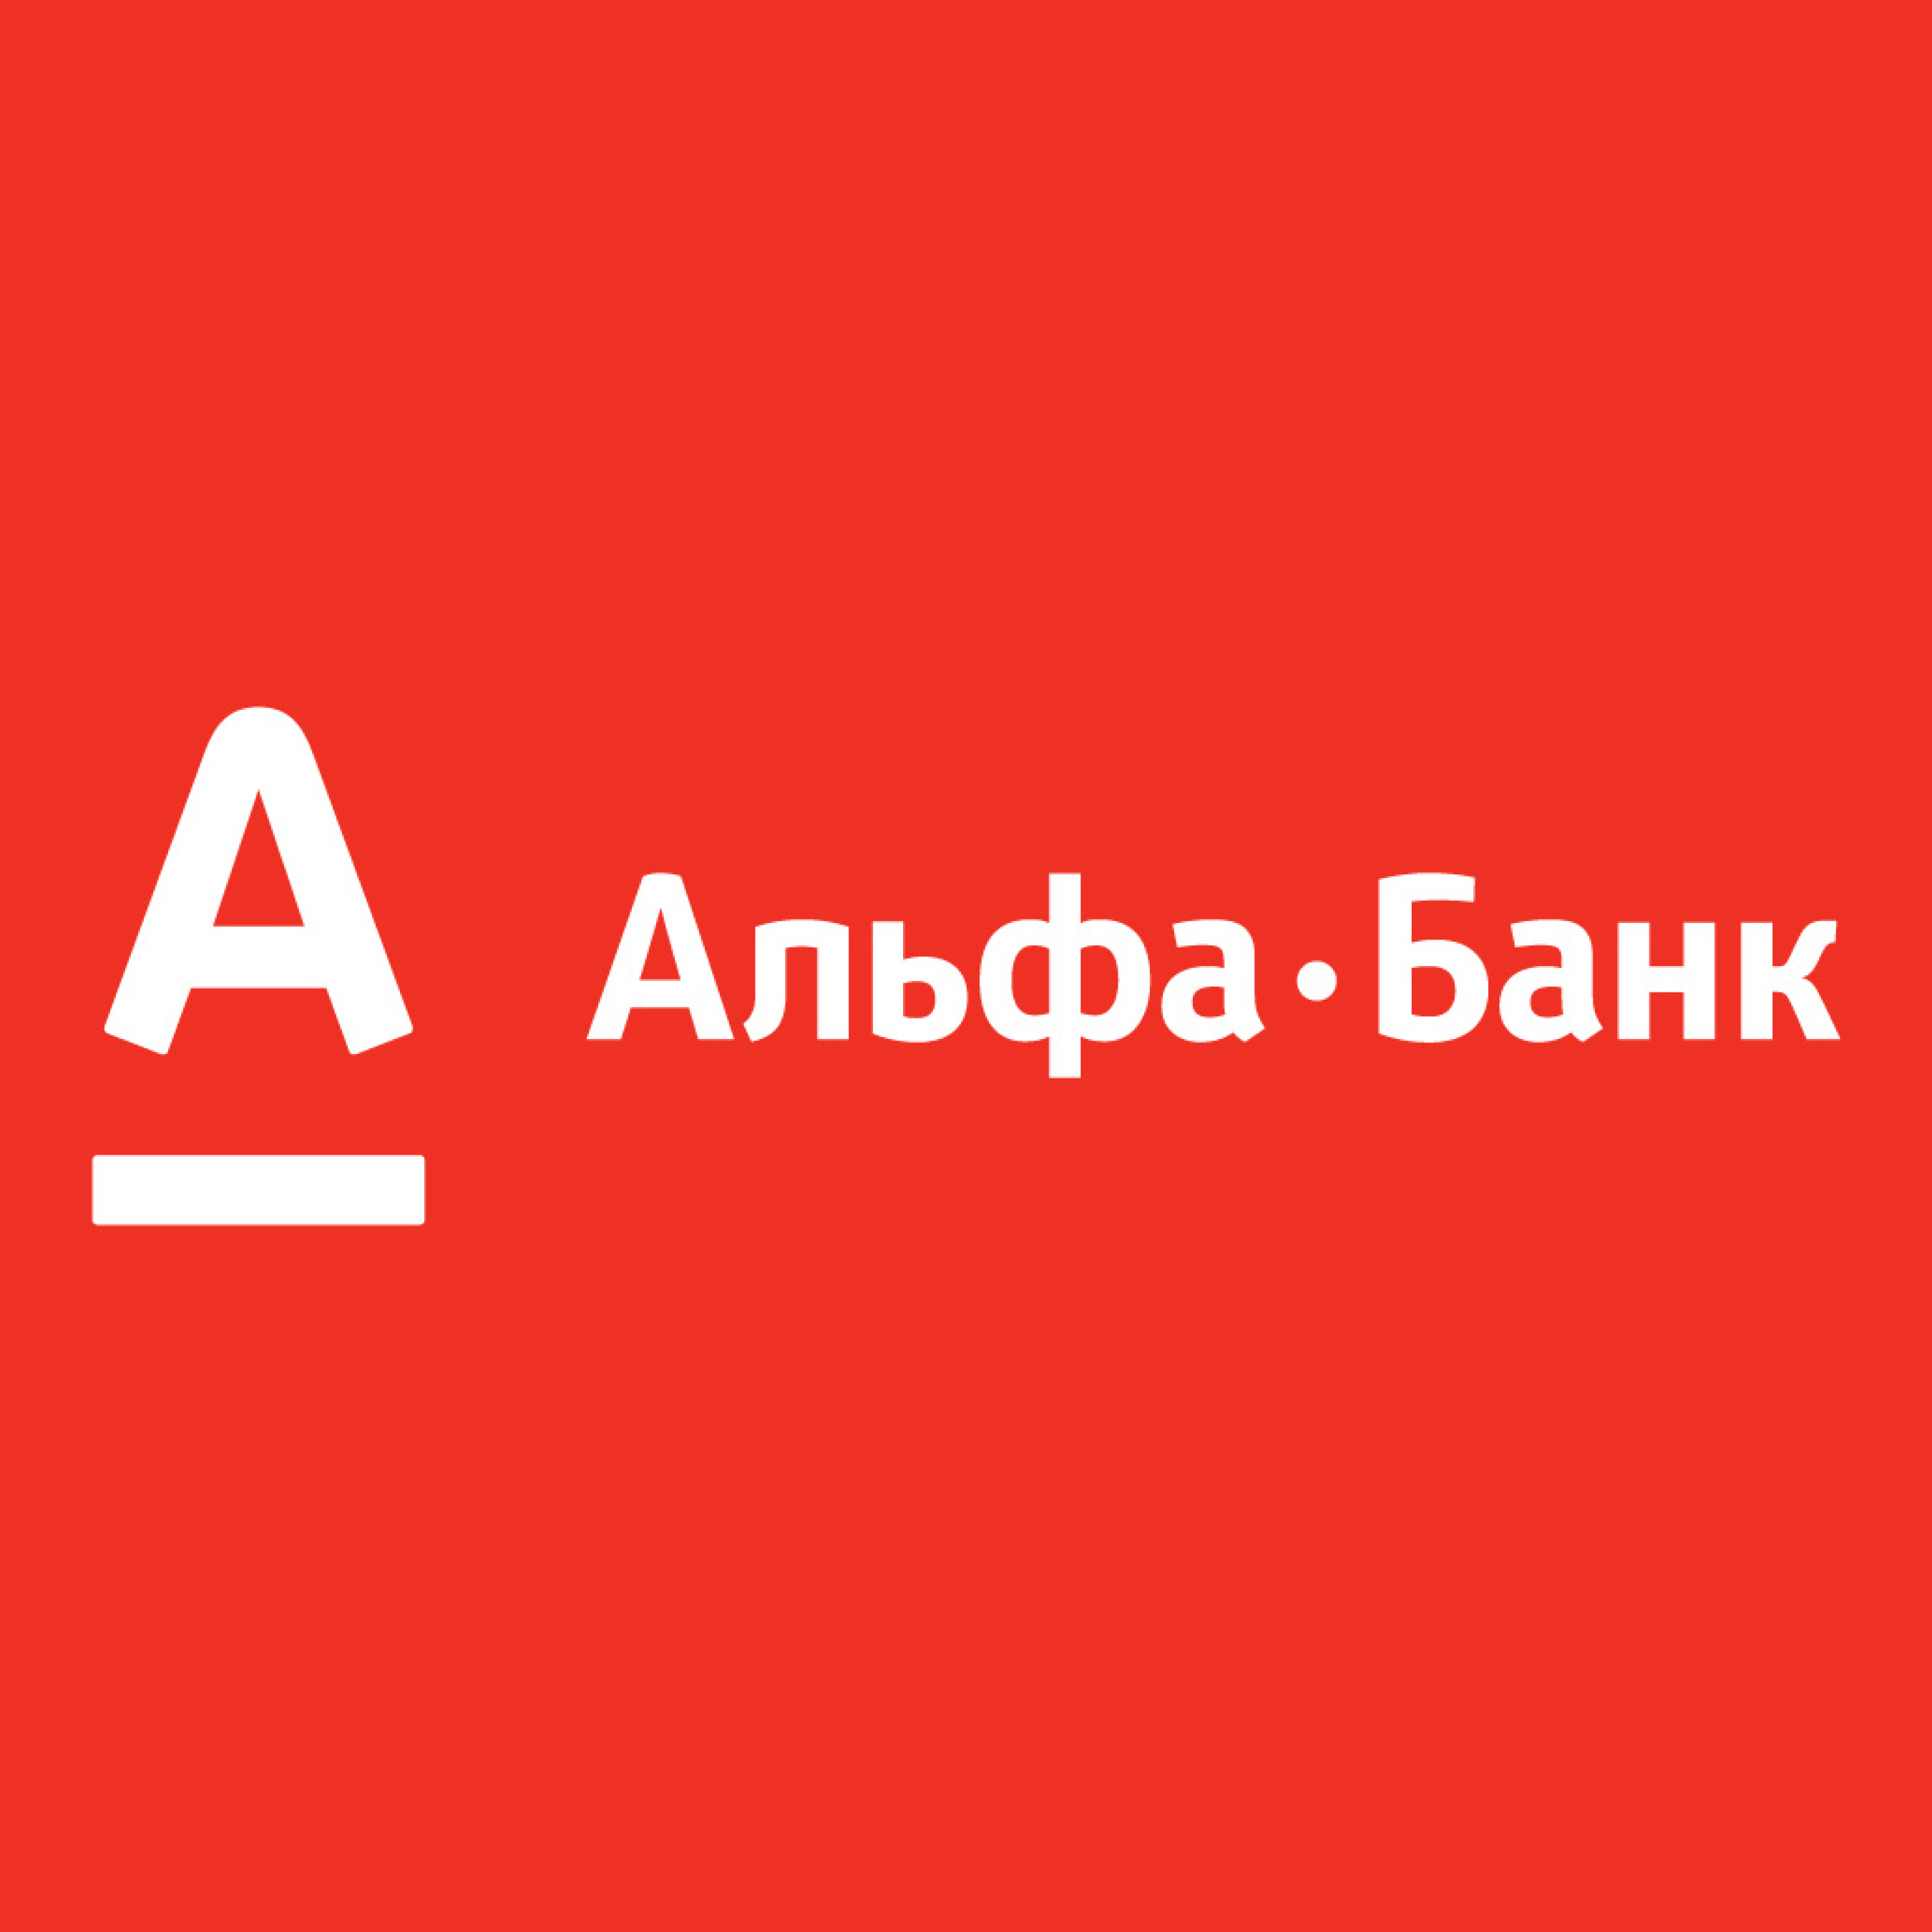 Альфа банк через сайт. Альфа банк. Логотип банка Альфа банк. Альфа банк Казахстан логотип. Альфа банк логотип новый.